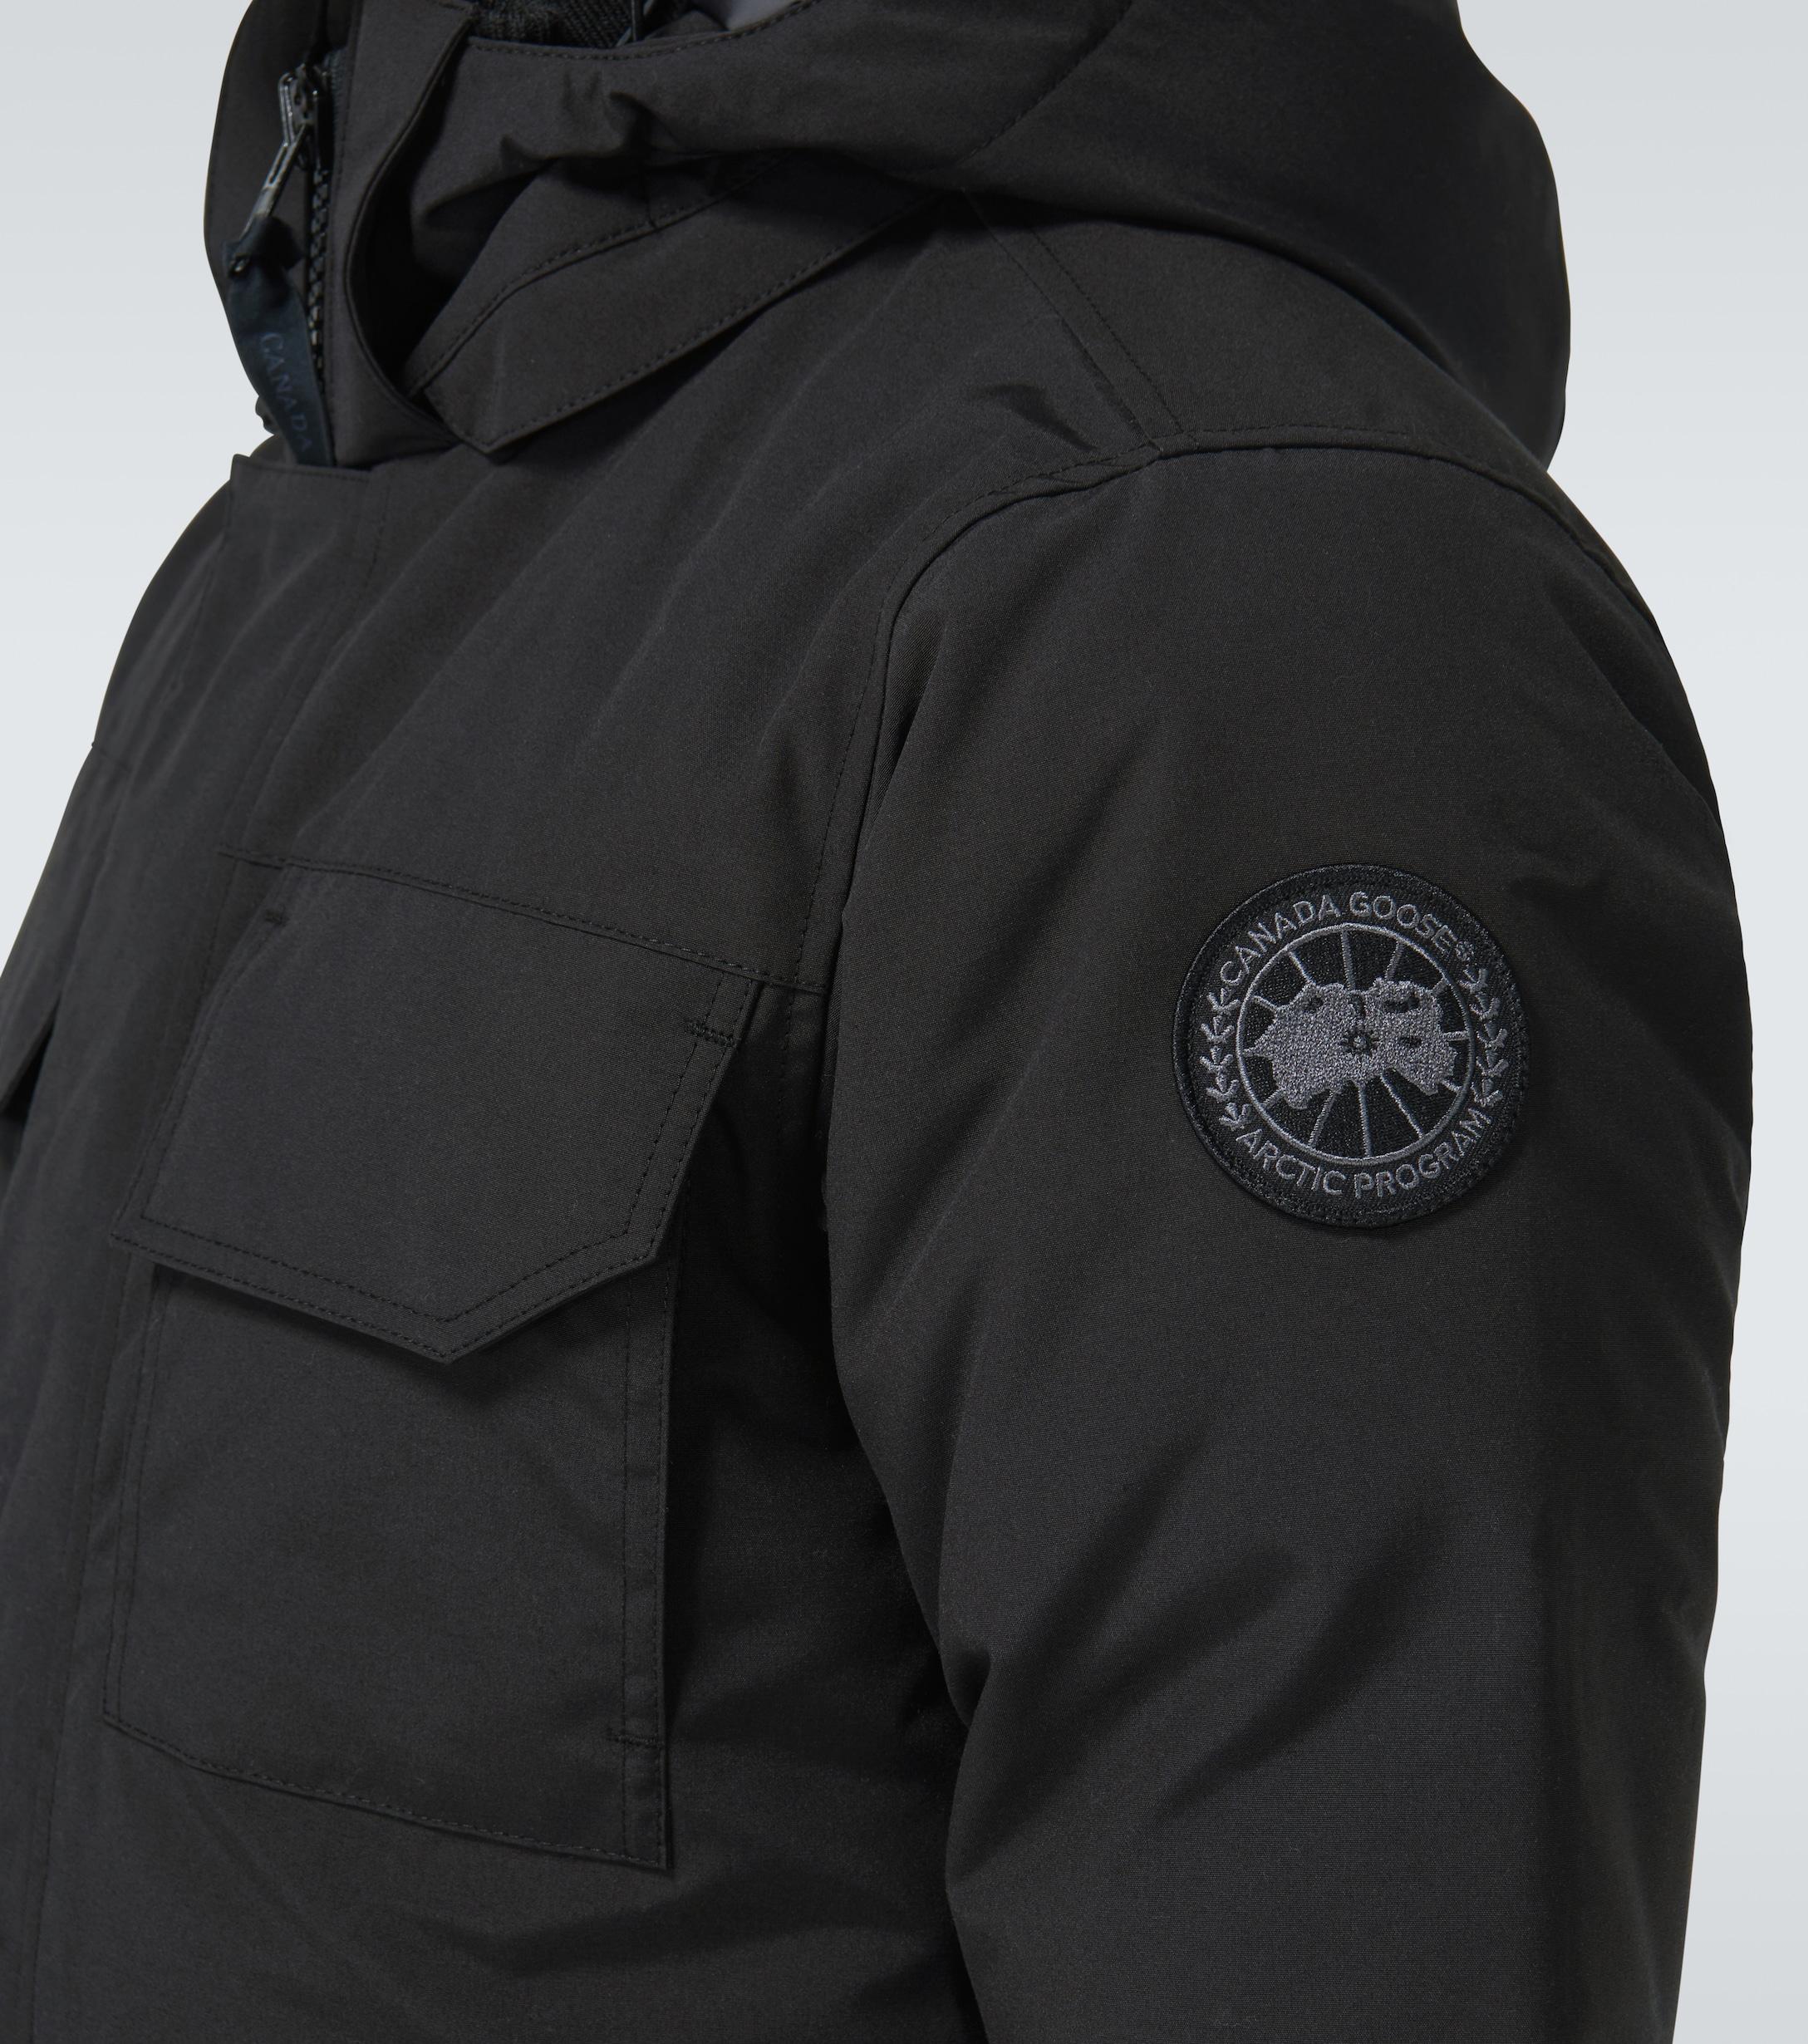 Canada Goose Goose Black Label Maitland Parka Jacket for Men - Save 58% |  Lyst